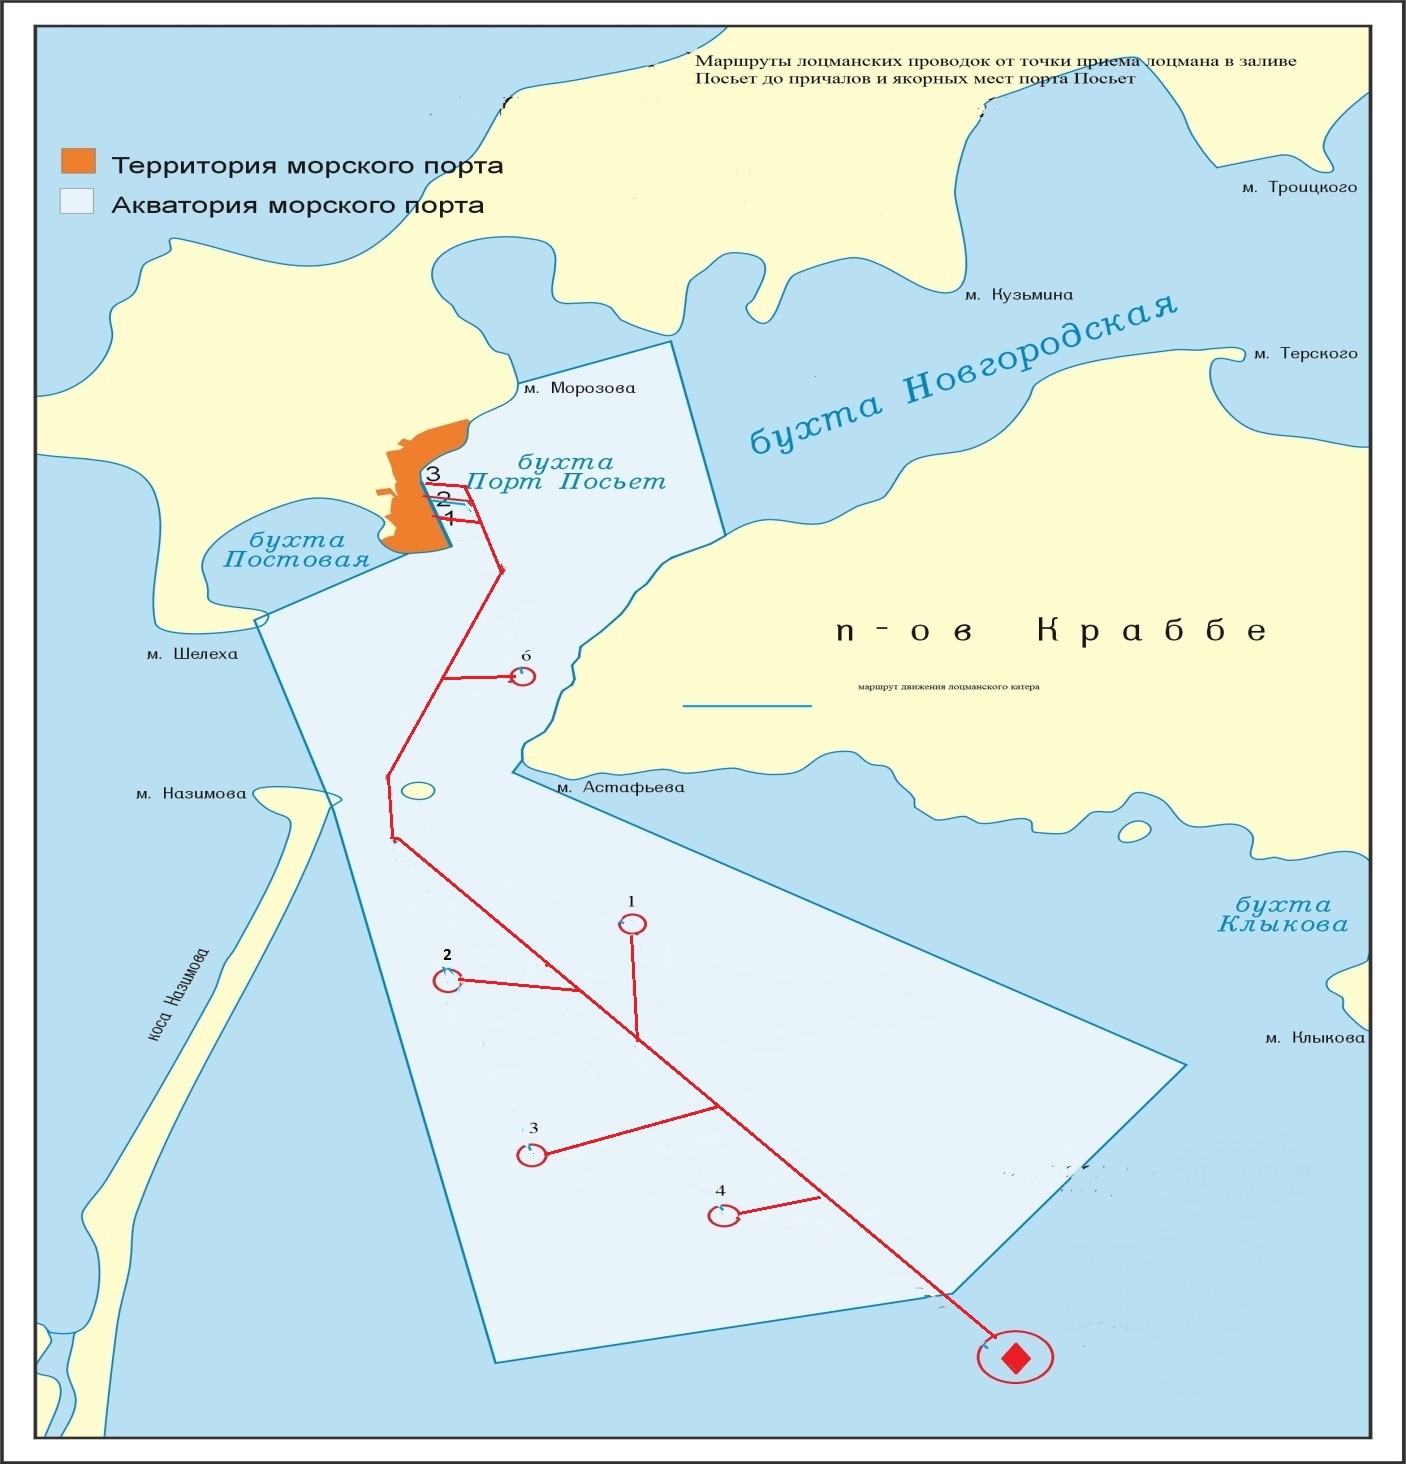 Схема маршрутов лоцманских проводок в морском порту Посьет в заливе Посьет